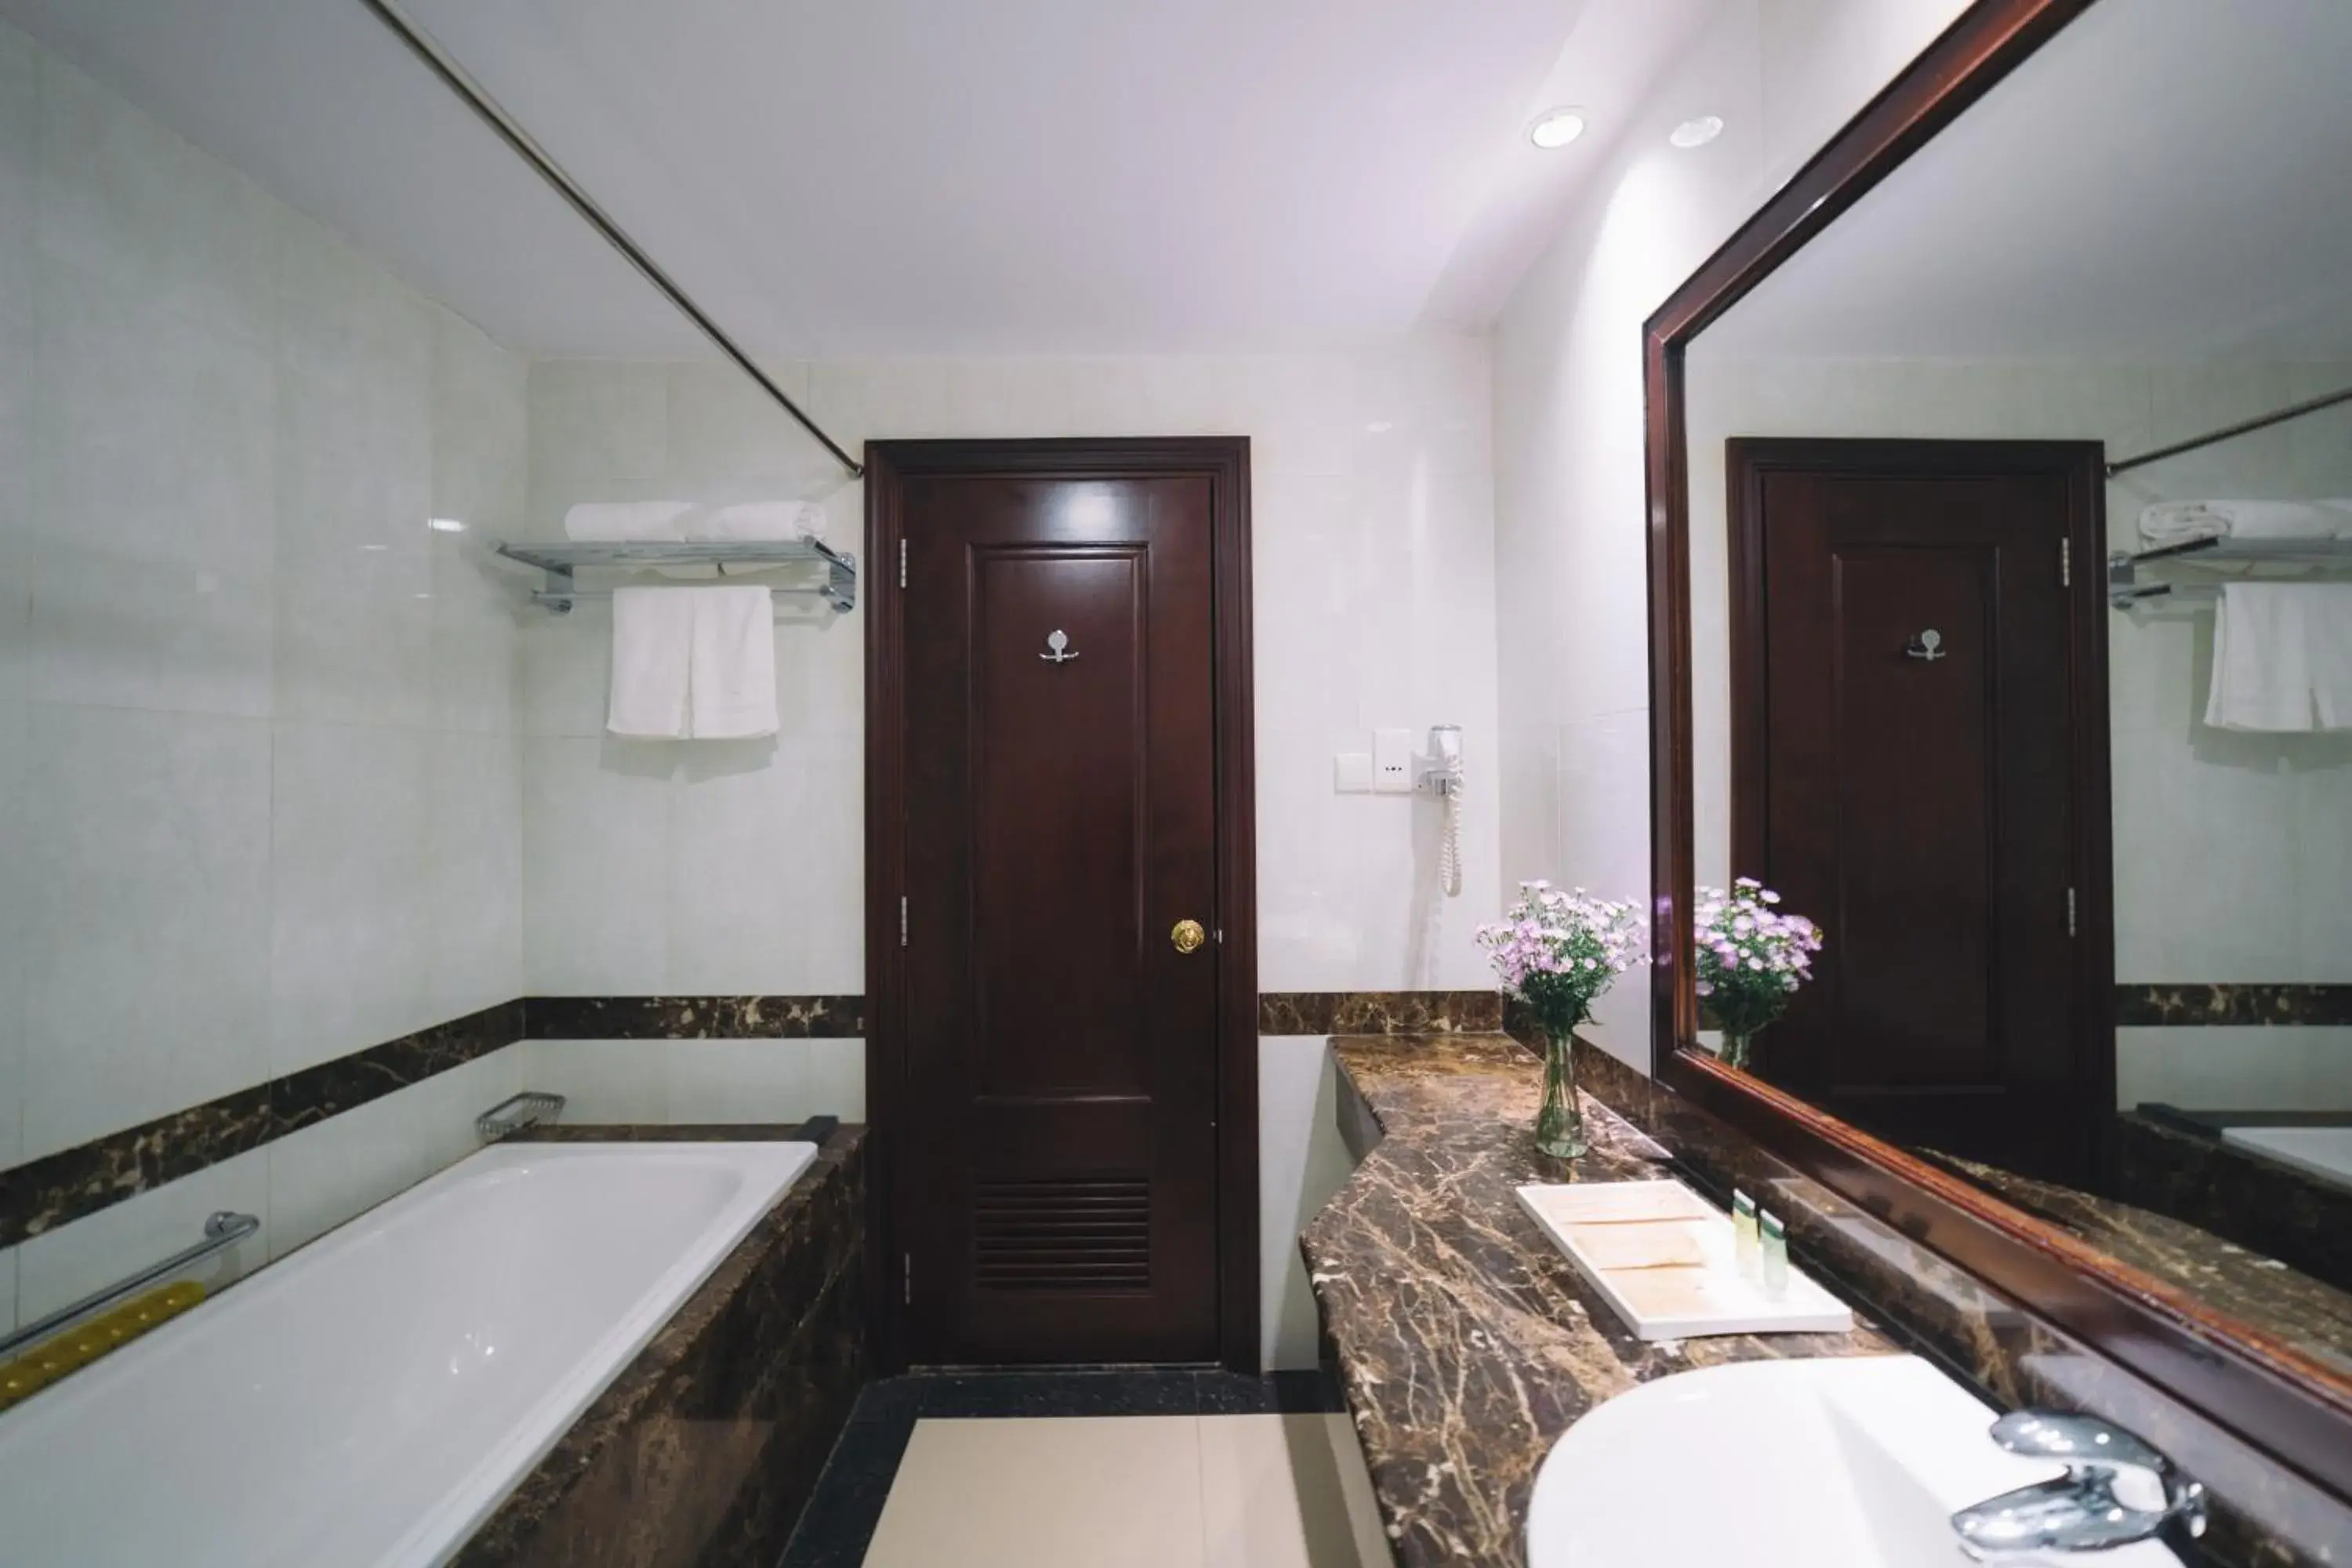 Bathroom in Saigon Dalat Hotel